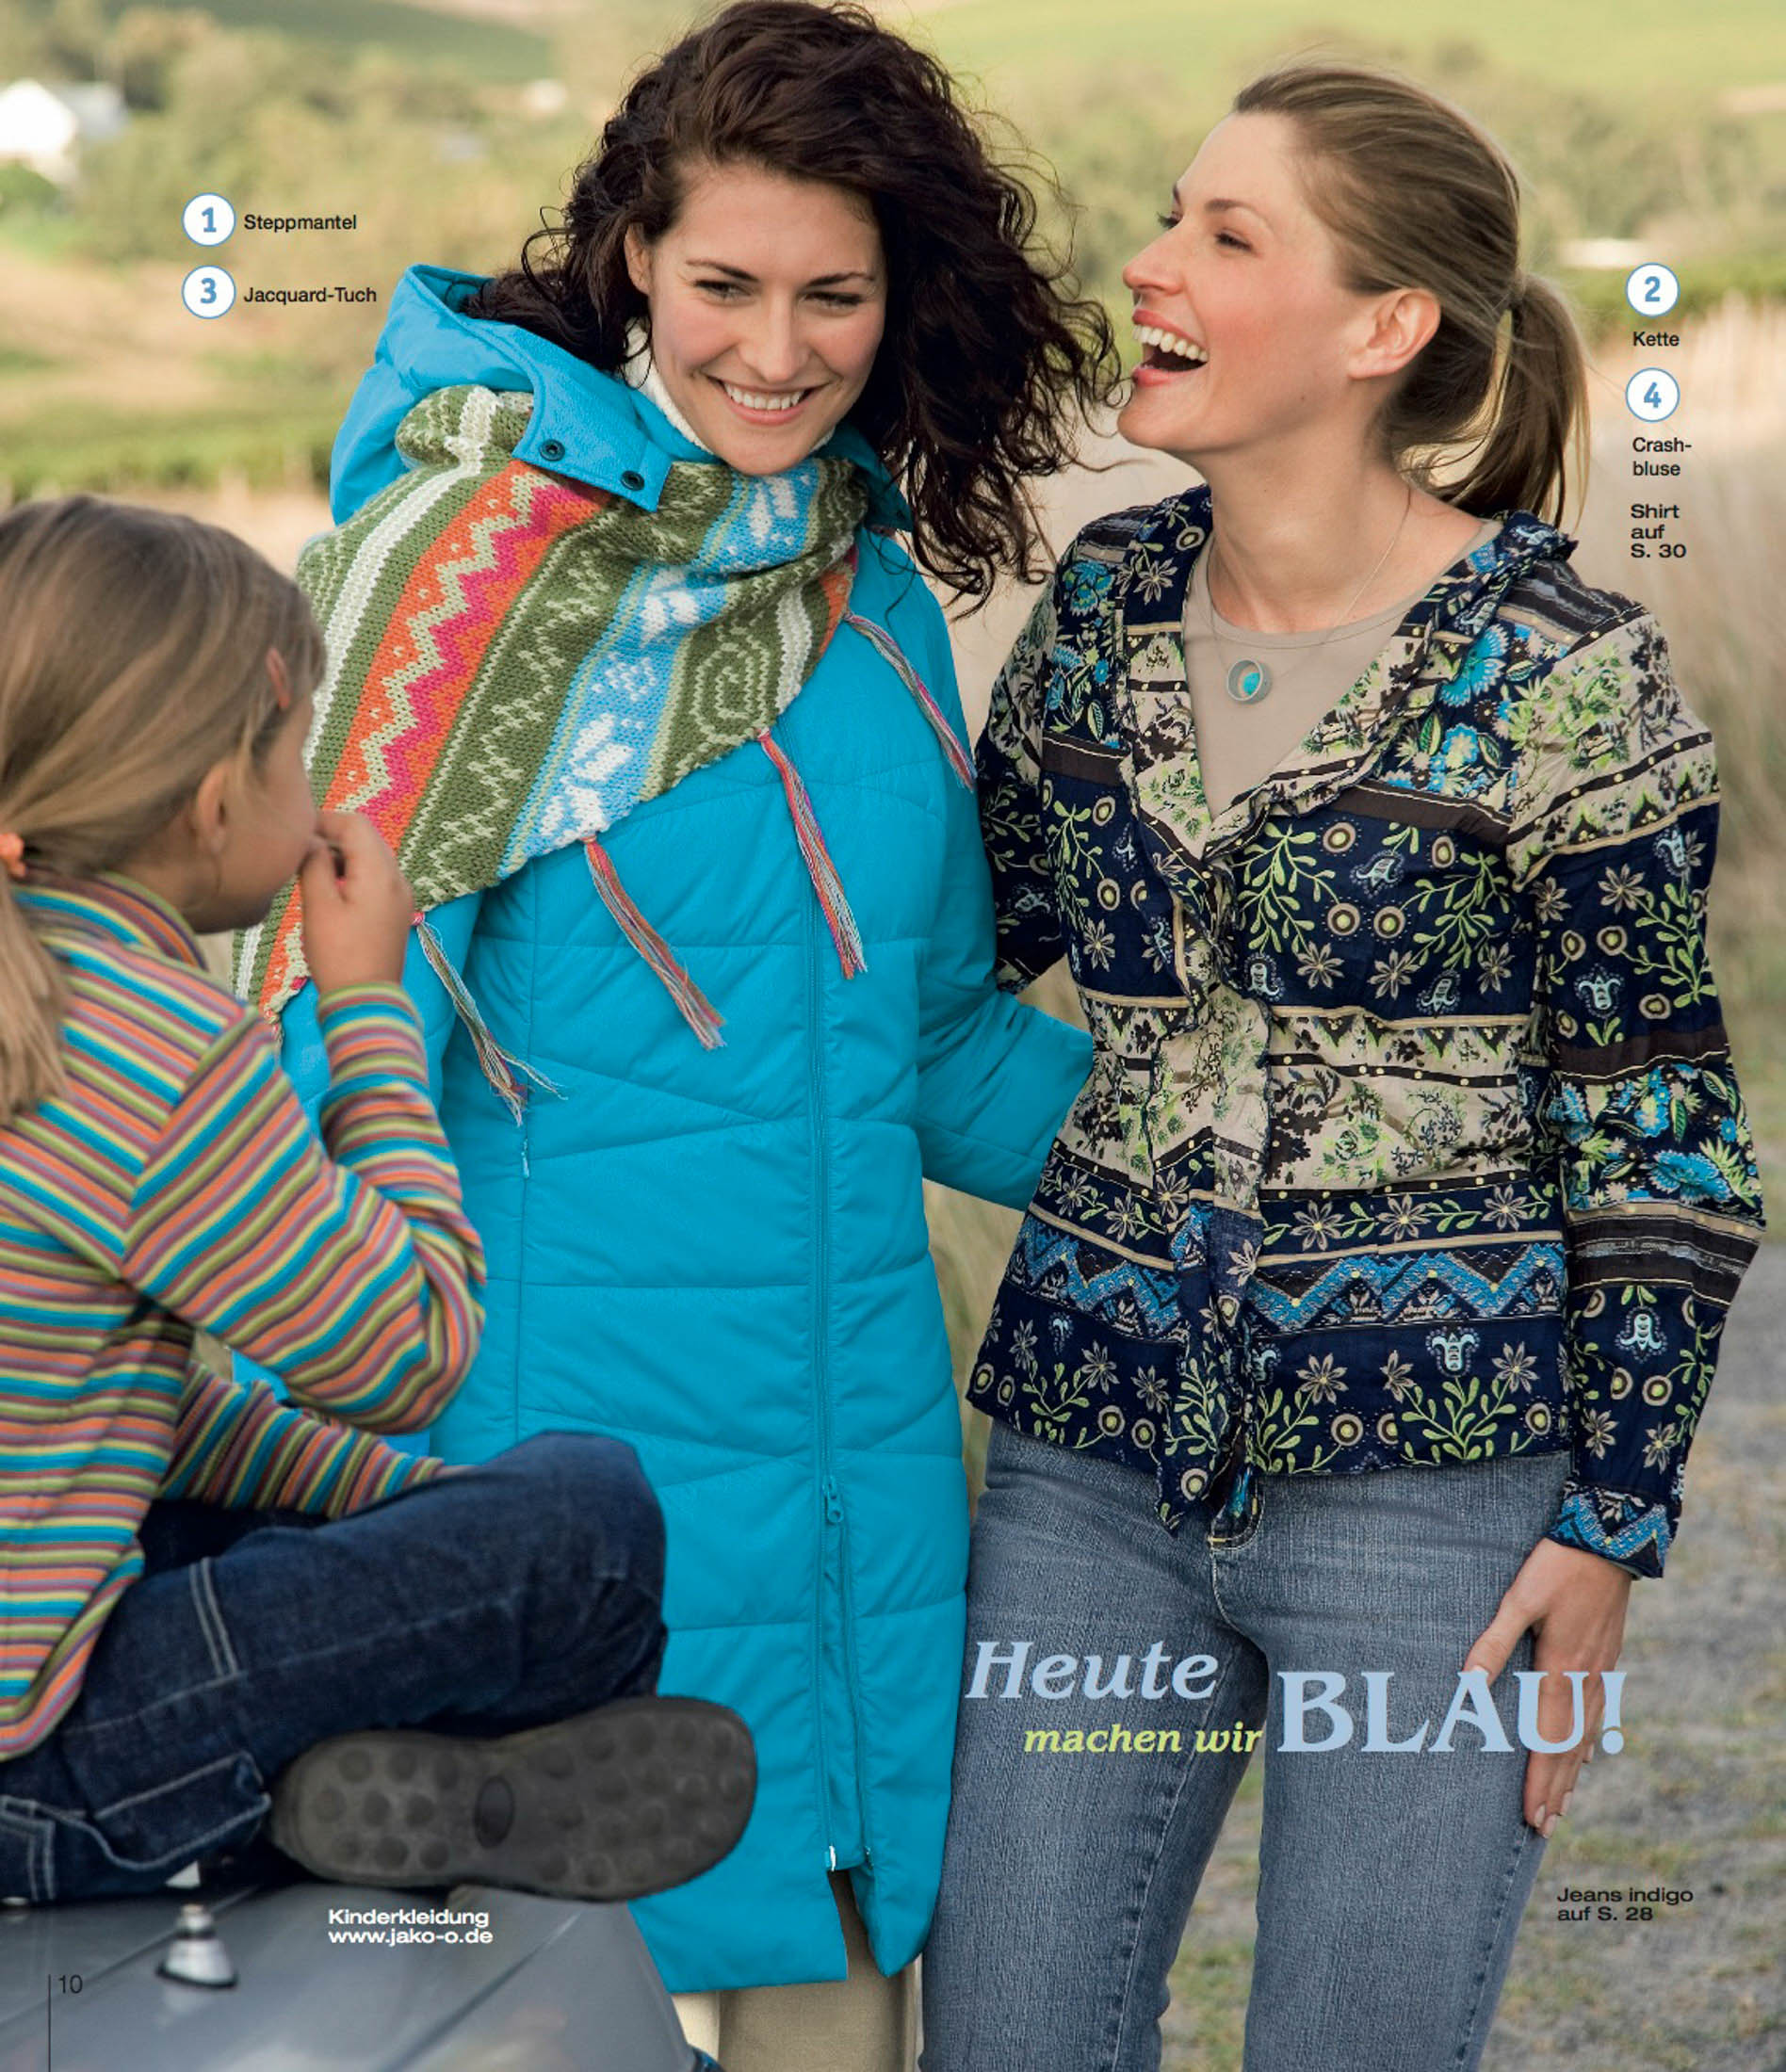 Zwei Frauen und ein junges Mädchen lächeln im Freien und genießen einen gemeinsamen Augenblick. Eine Frau trägt einen blauen Mantel und Schal, die andere eine gemusterte Jacke. Der Text auf dem Bild weist auf ein Thema über die Farbe Blau hin. © Fotografie Tomas Rodriguez